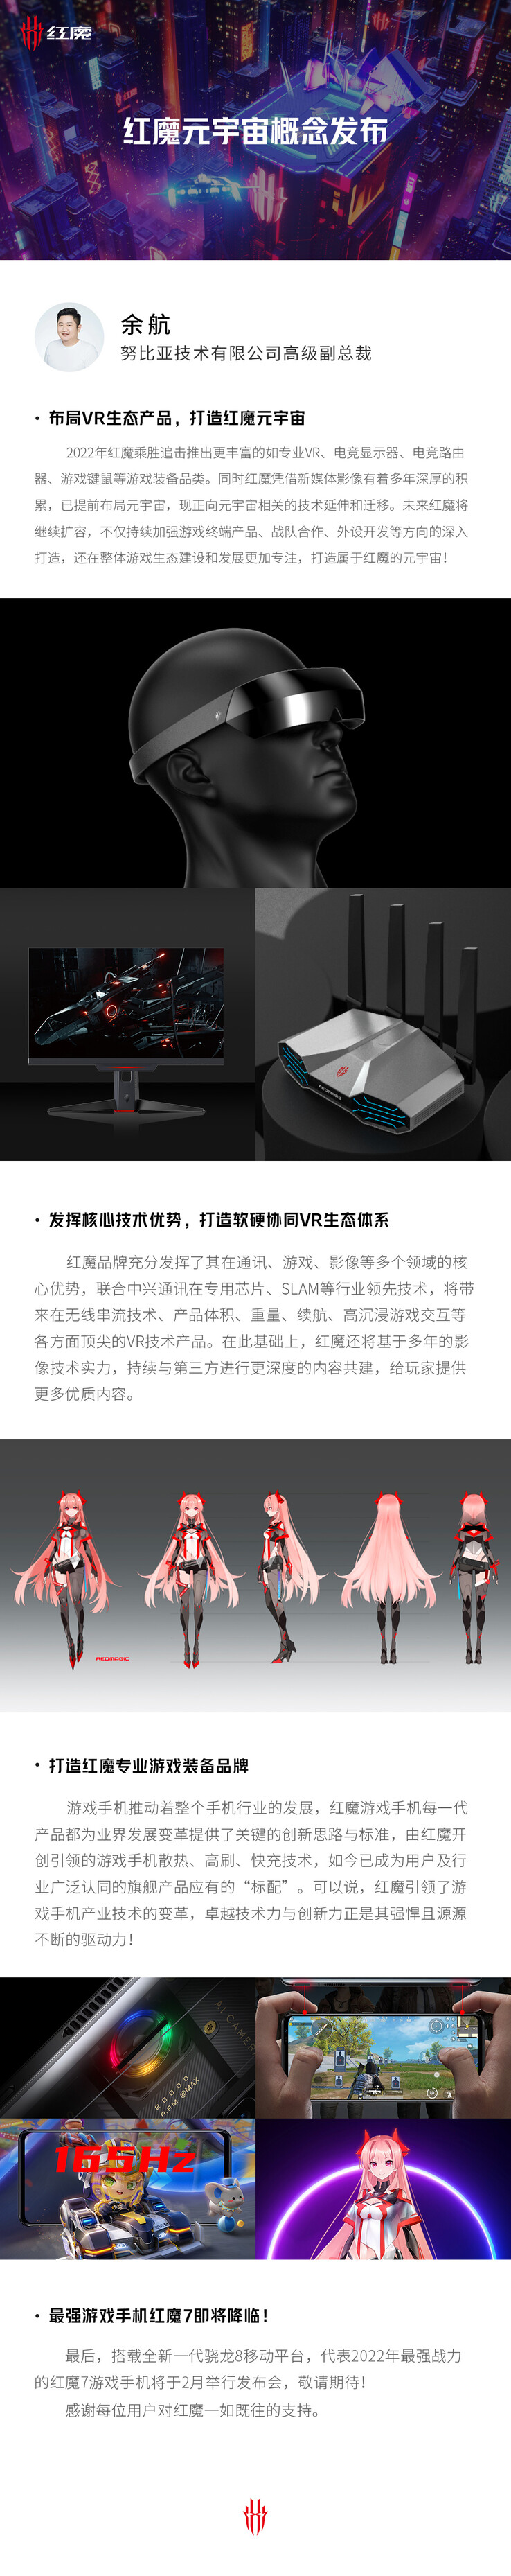 RedMagic lâche plusieurs indices de nouveaux produits dans la même affiche. (Source : RedMagic via Weibo)